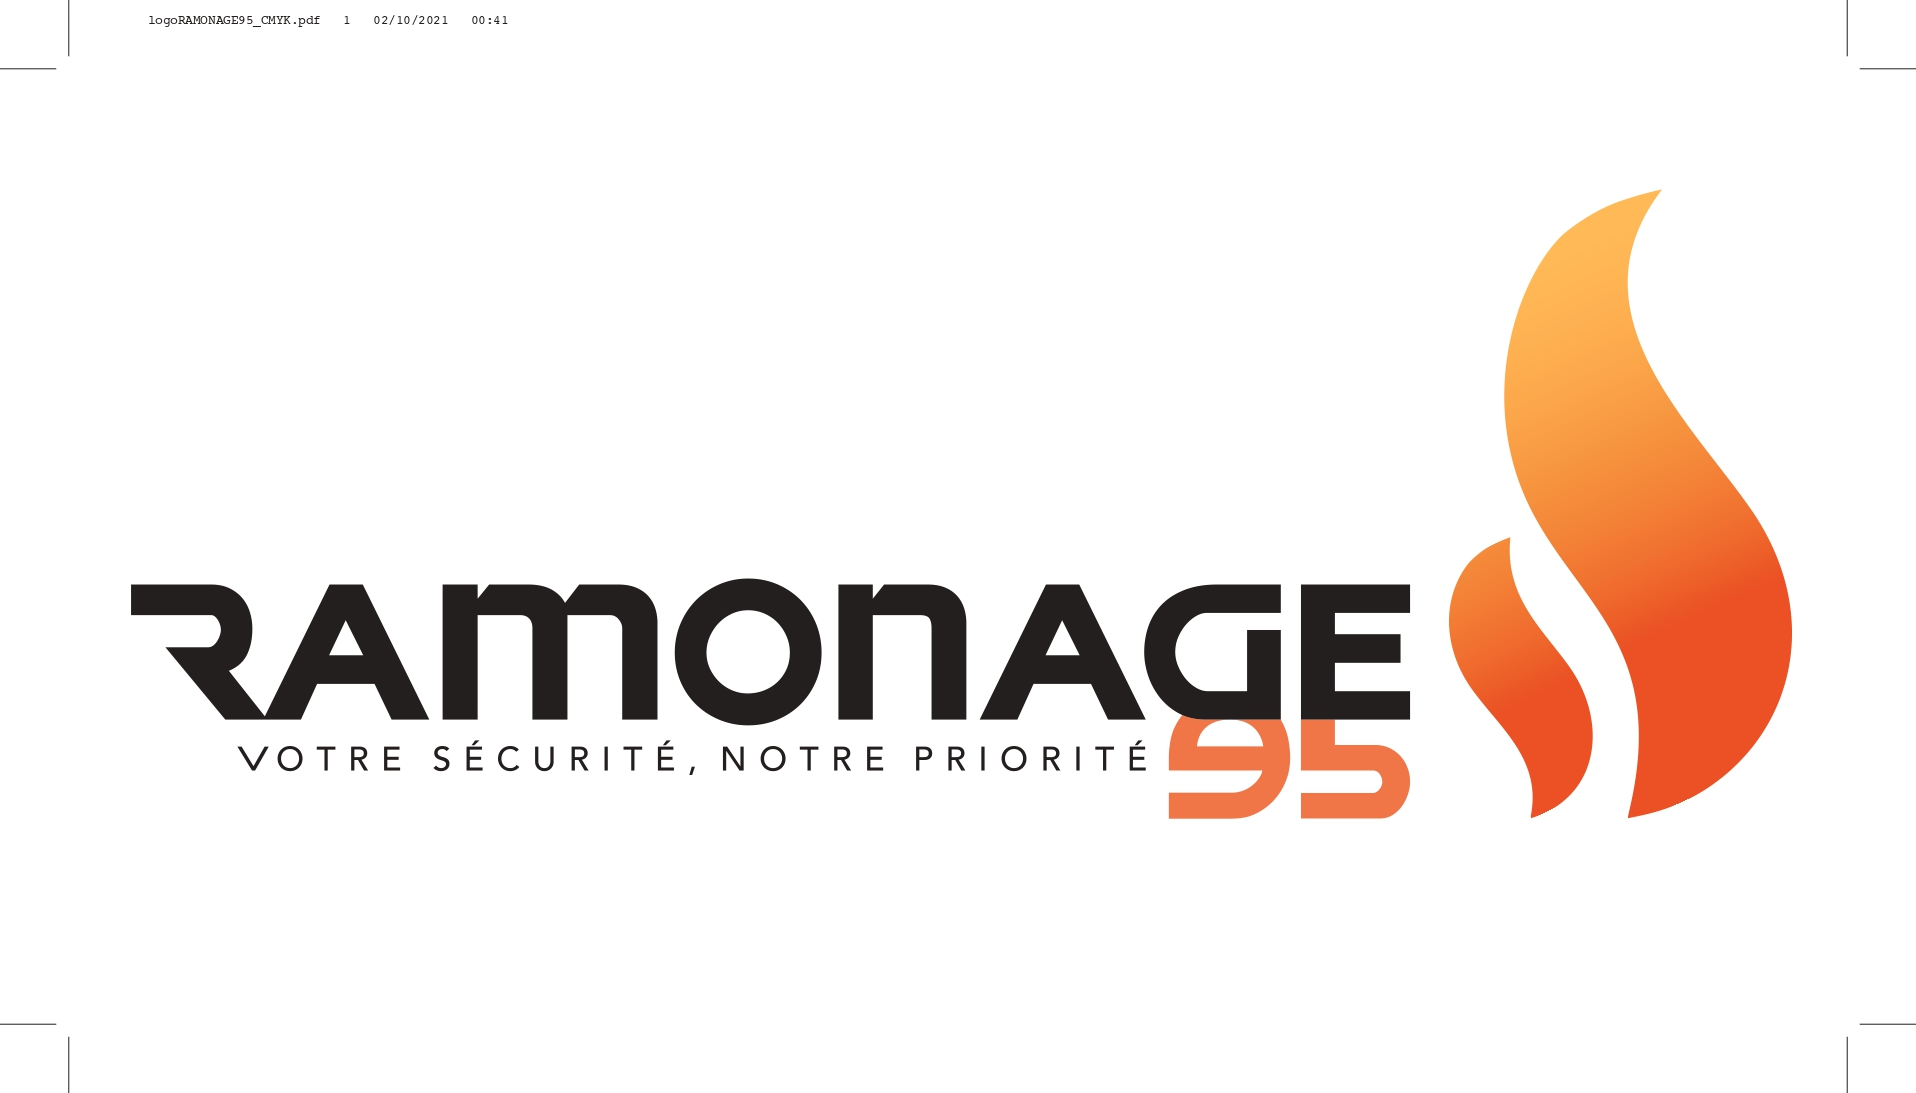 Ramonage 95